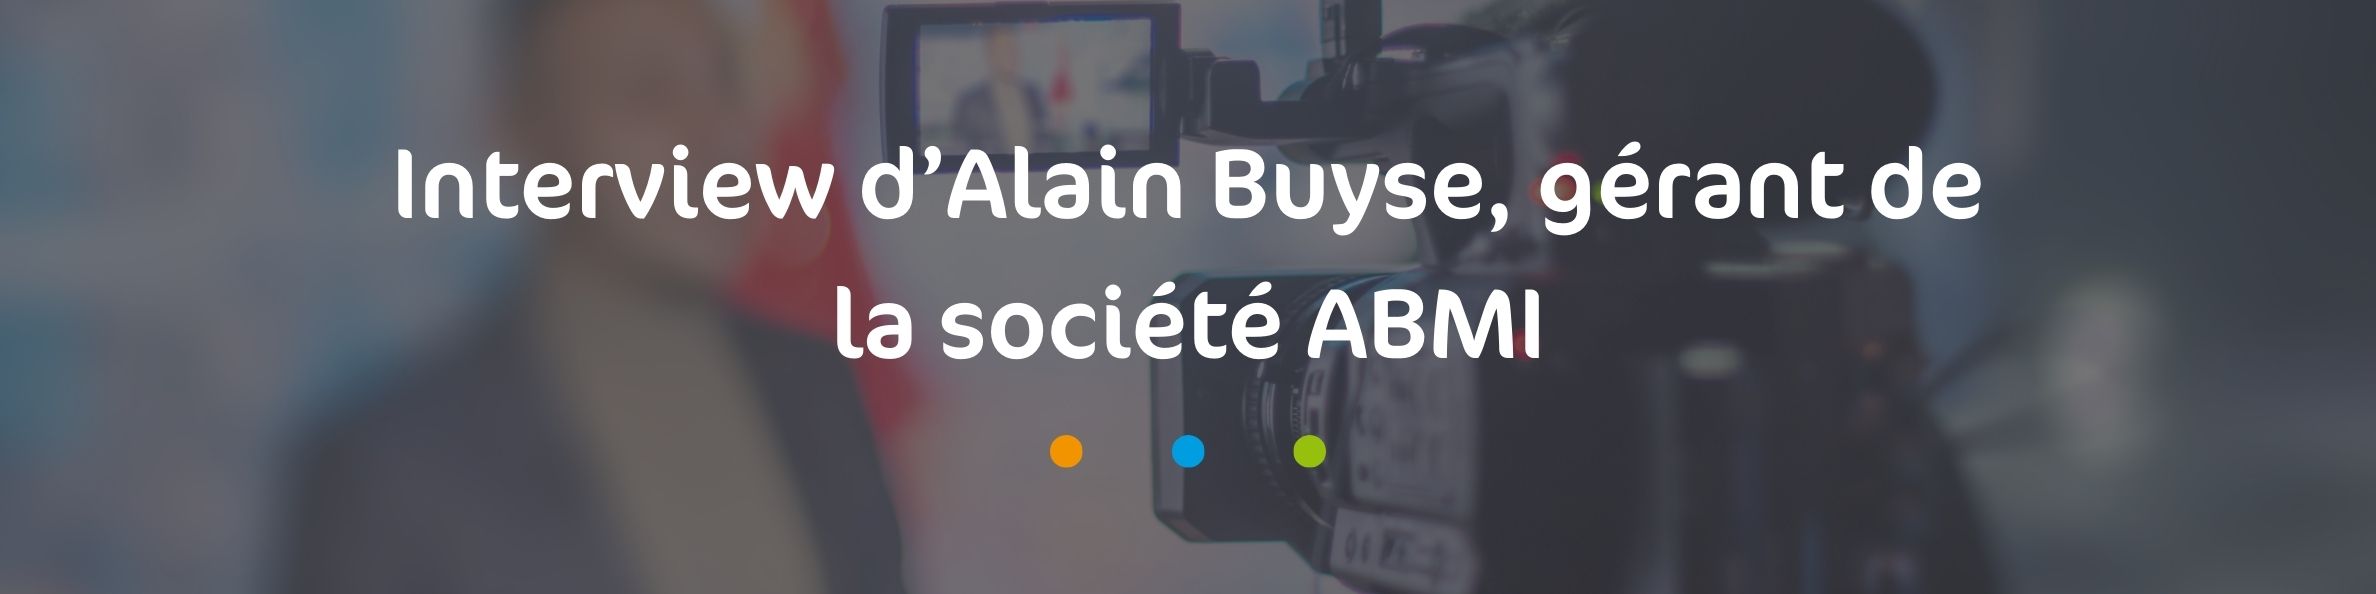 Alain Buyse, gérant d'ABMI